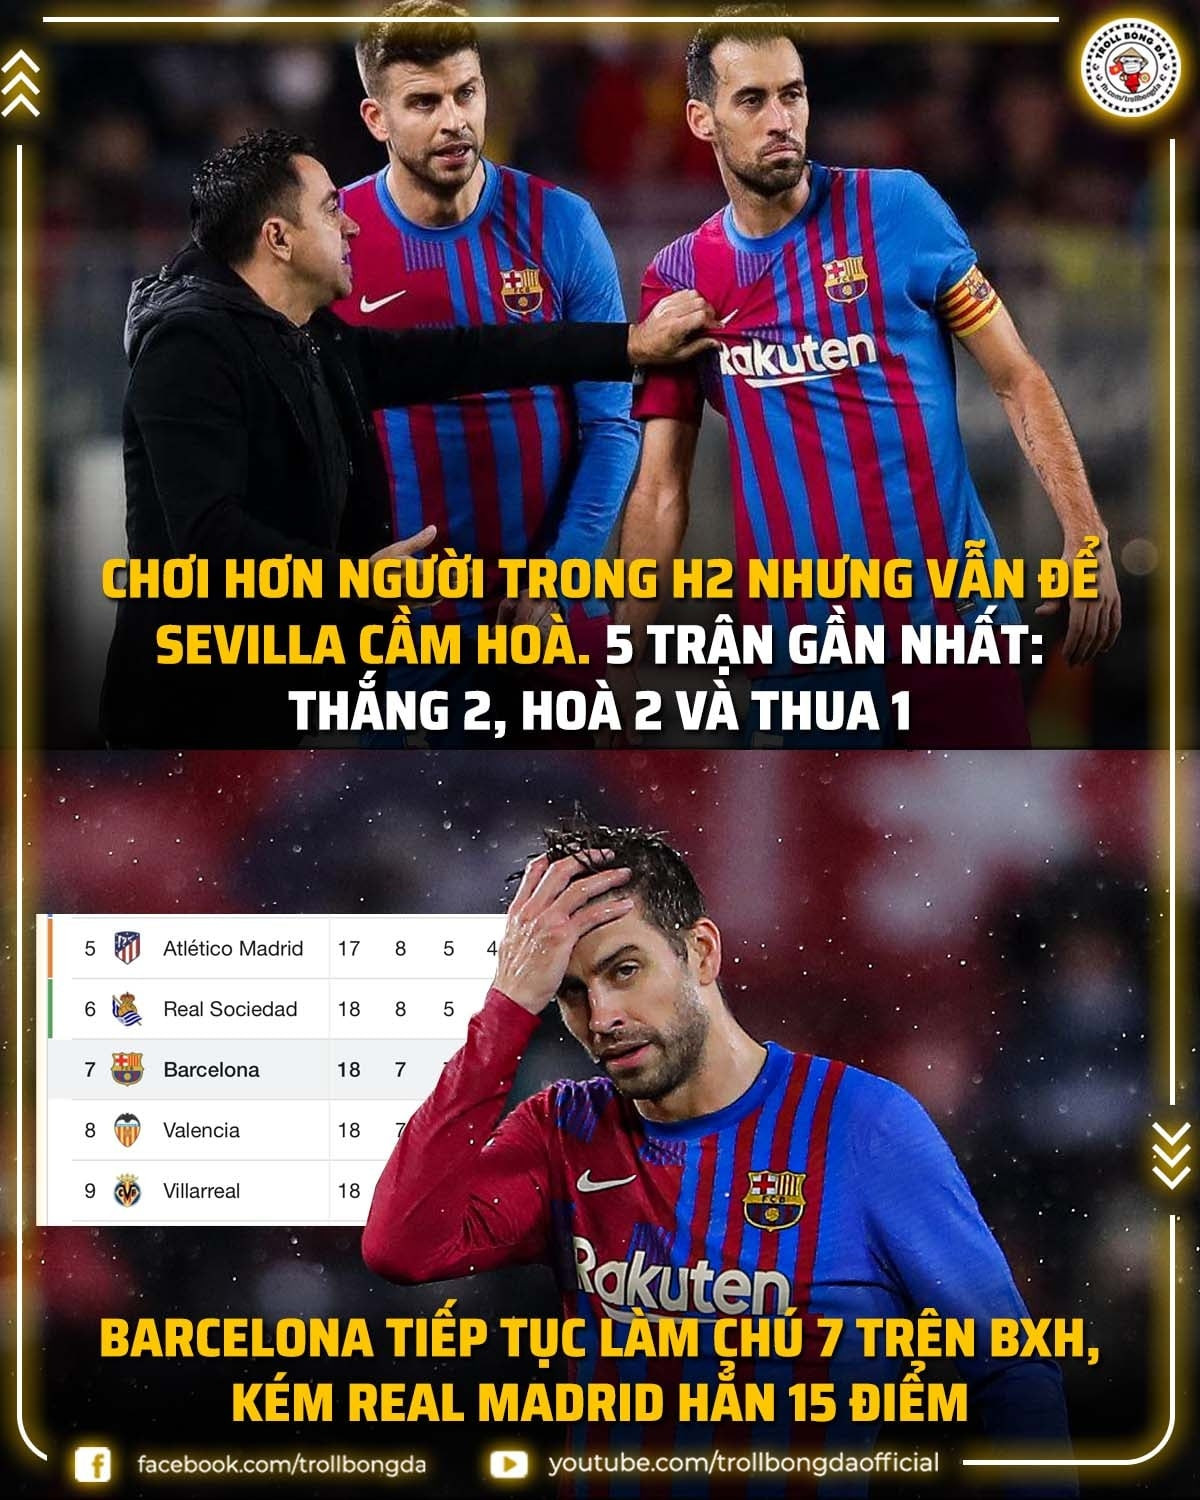 Barca đánh mất chính mình ở mùa giải này. (Ảnh: Troll Bóng Đá)